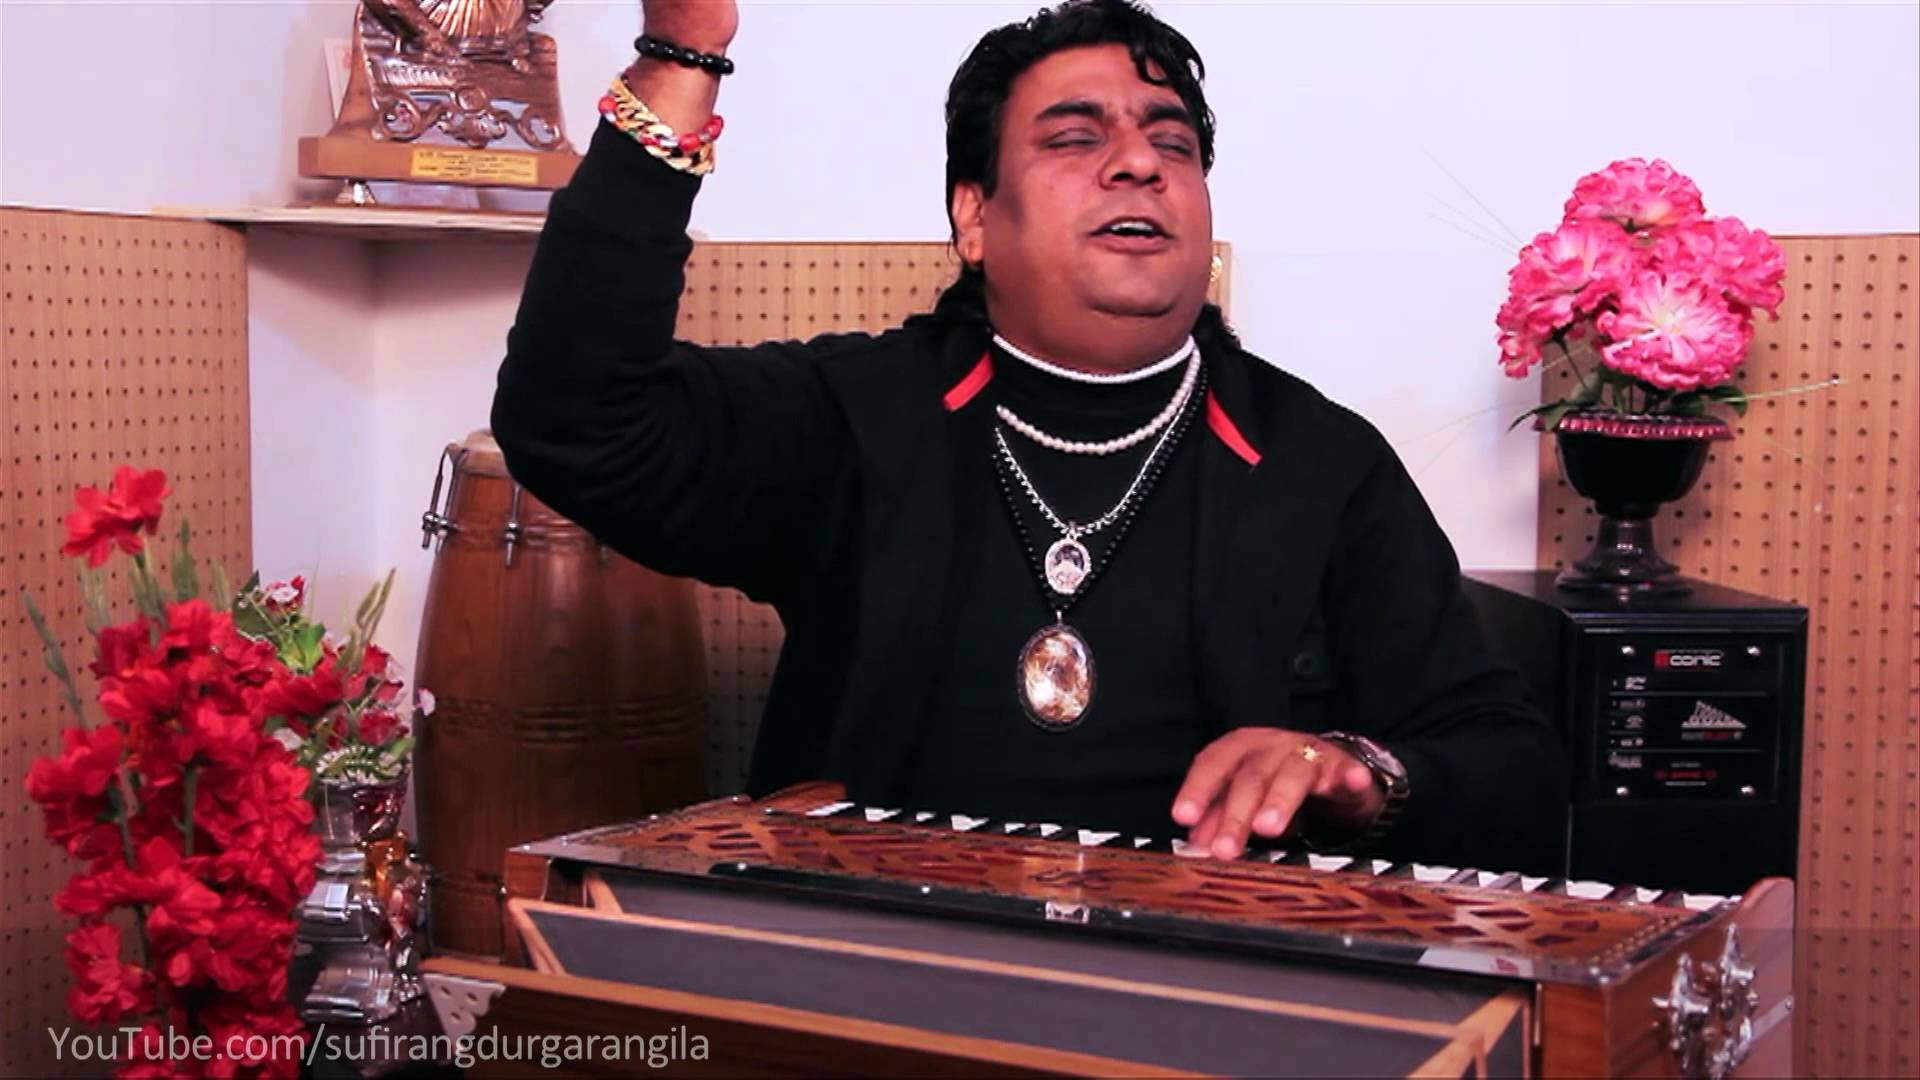 Durga Rangila Playing Harmonium